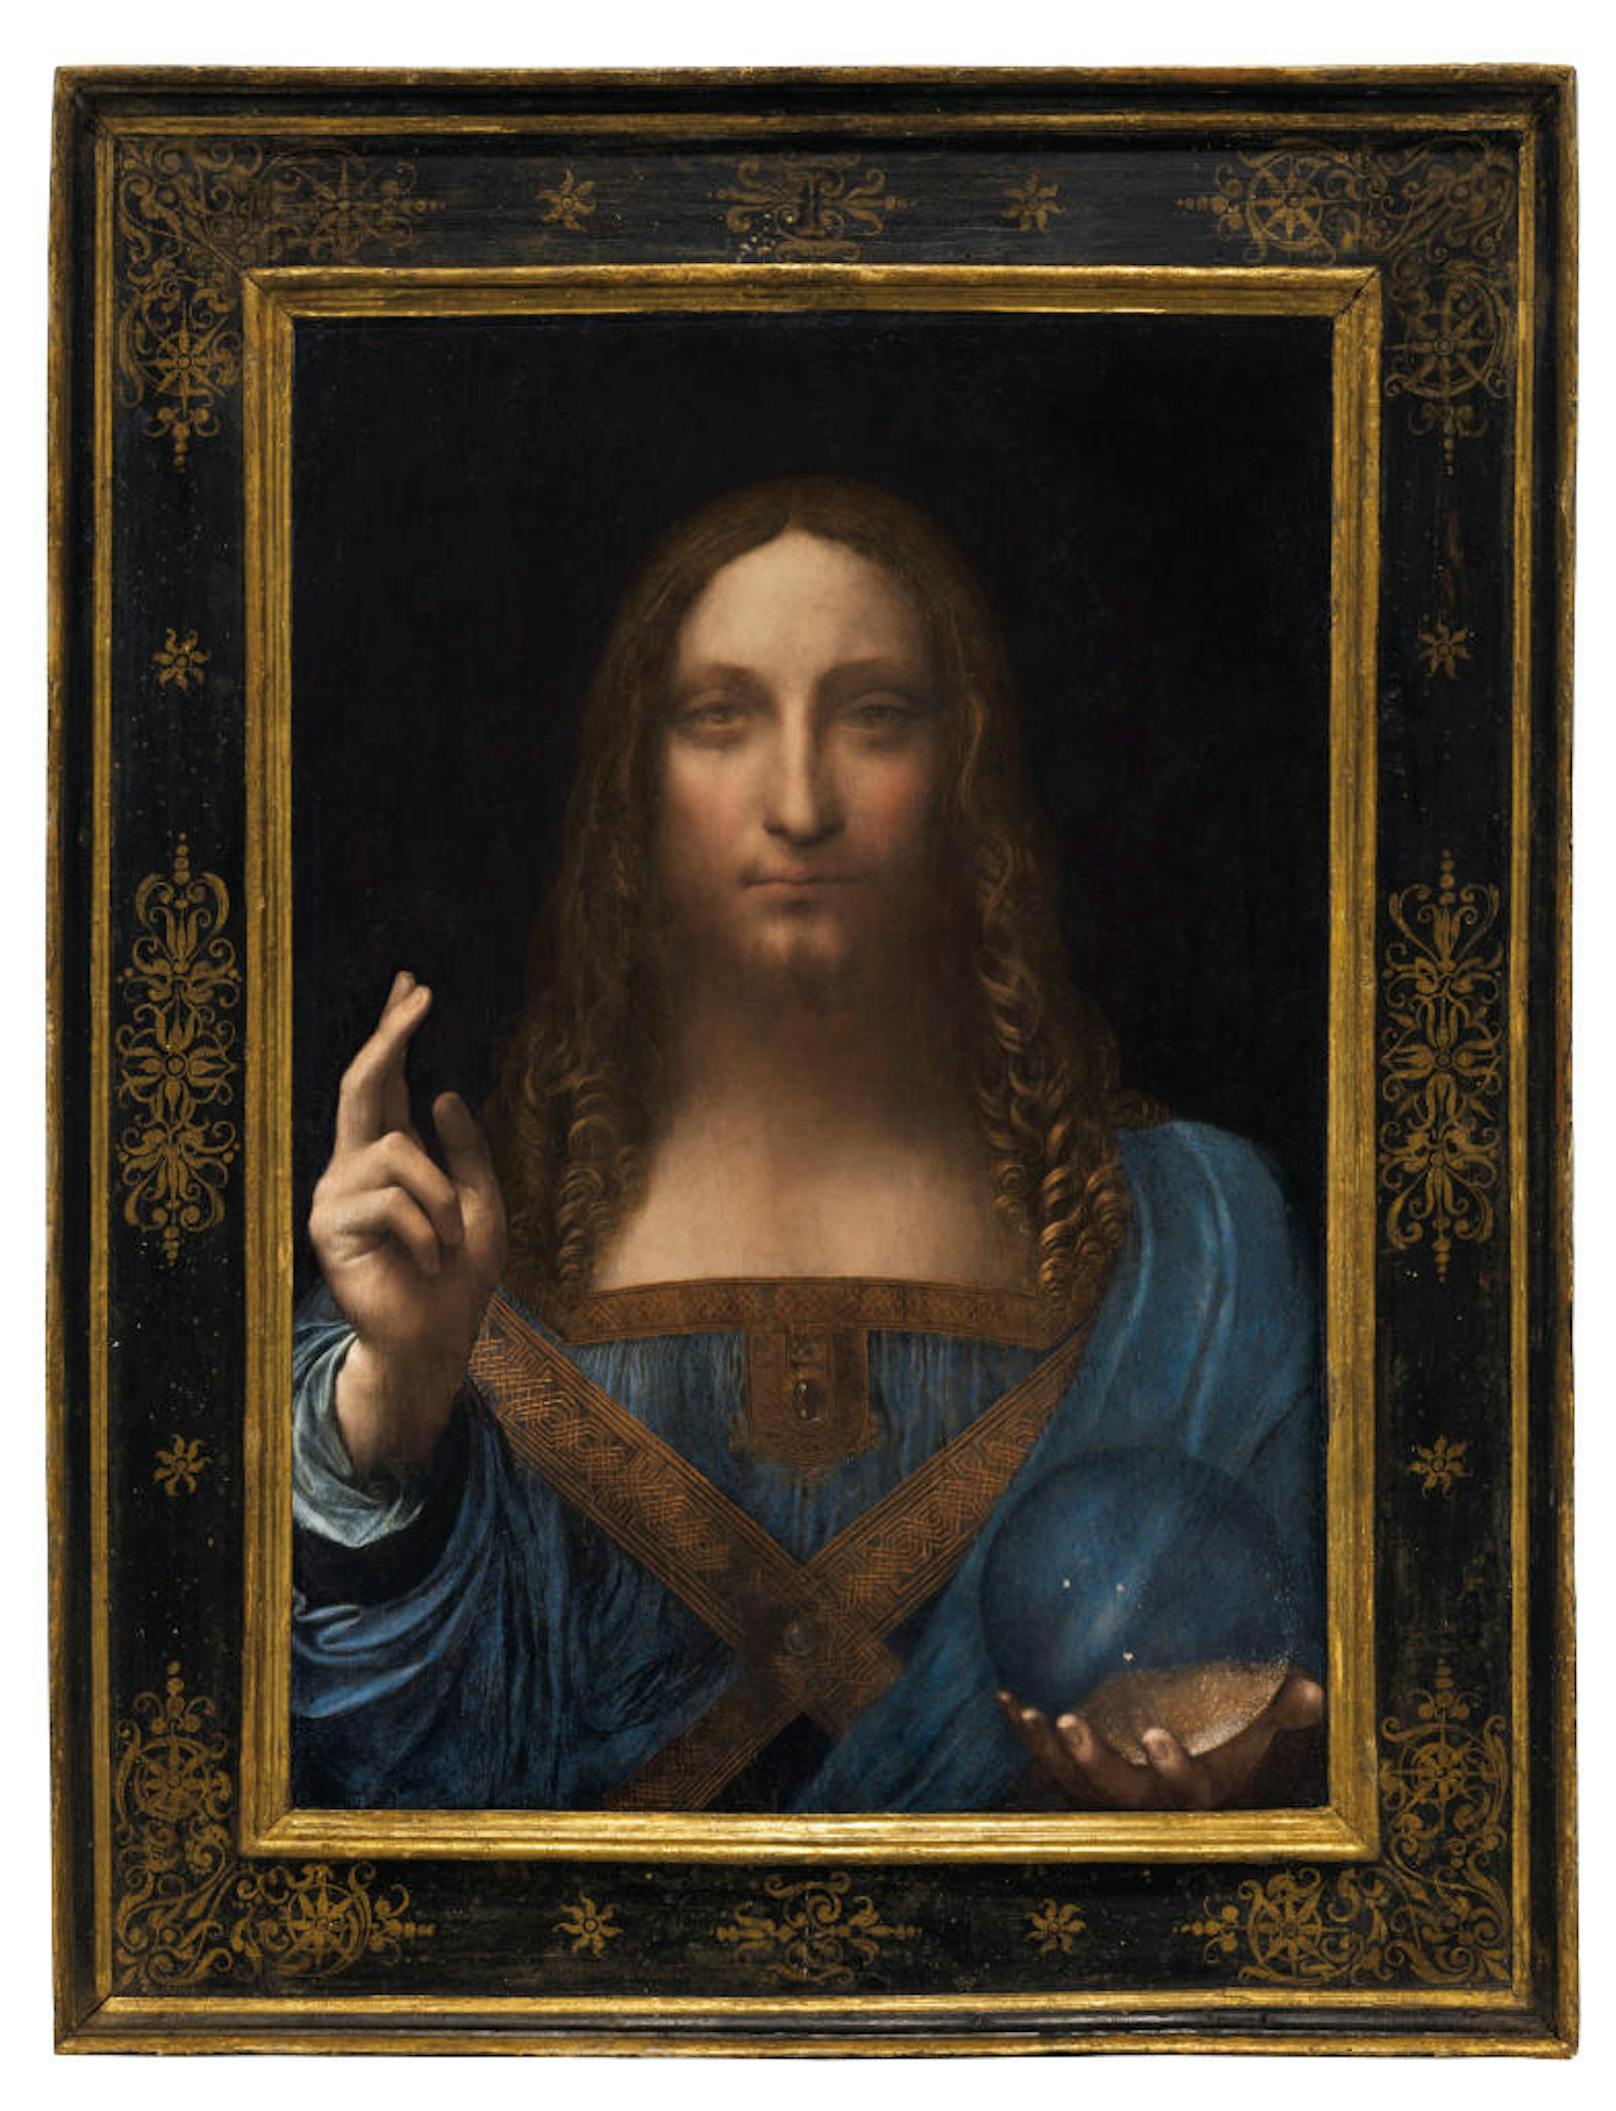 Salvator Mundi (deutsch "Heiland der Welt") ist 65,6 × 45,4 cm groß und mit Ölfarben auf einer Walnussholztafel gemalt. Es zeigt Christus als Heiland der Welt, die rechte Hand segnend erhoben, in der Linken hält er eine Kristallkugel. Das Gemälde soll einst dem englischen König Karl I. gehört haben. Es war bis zur Versteigerung das einzige da Vinci-Gemälde in privater Hand.